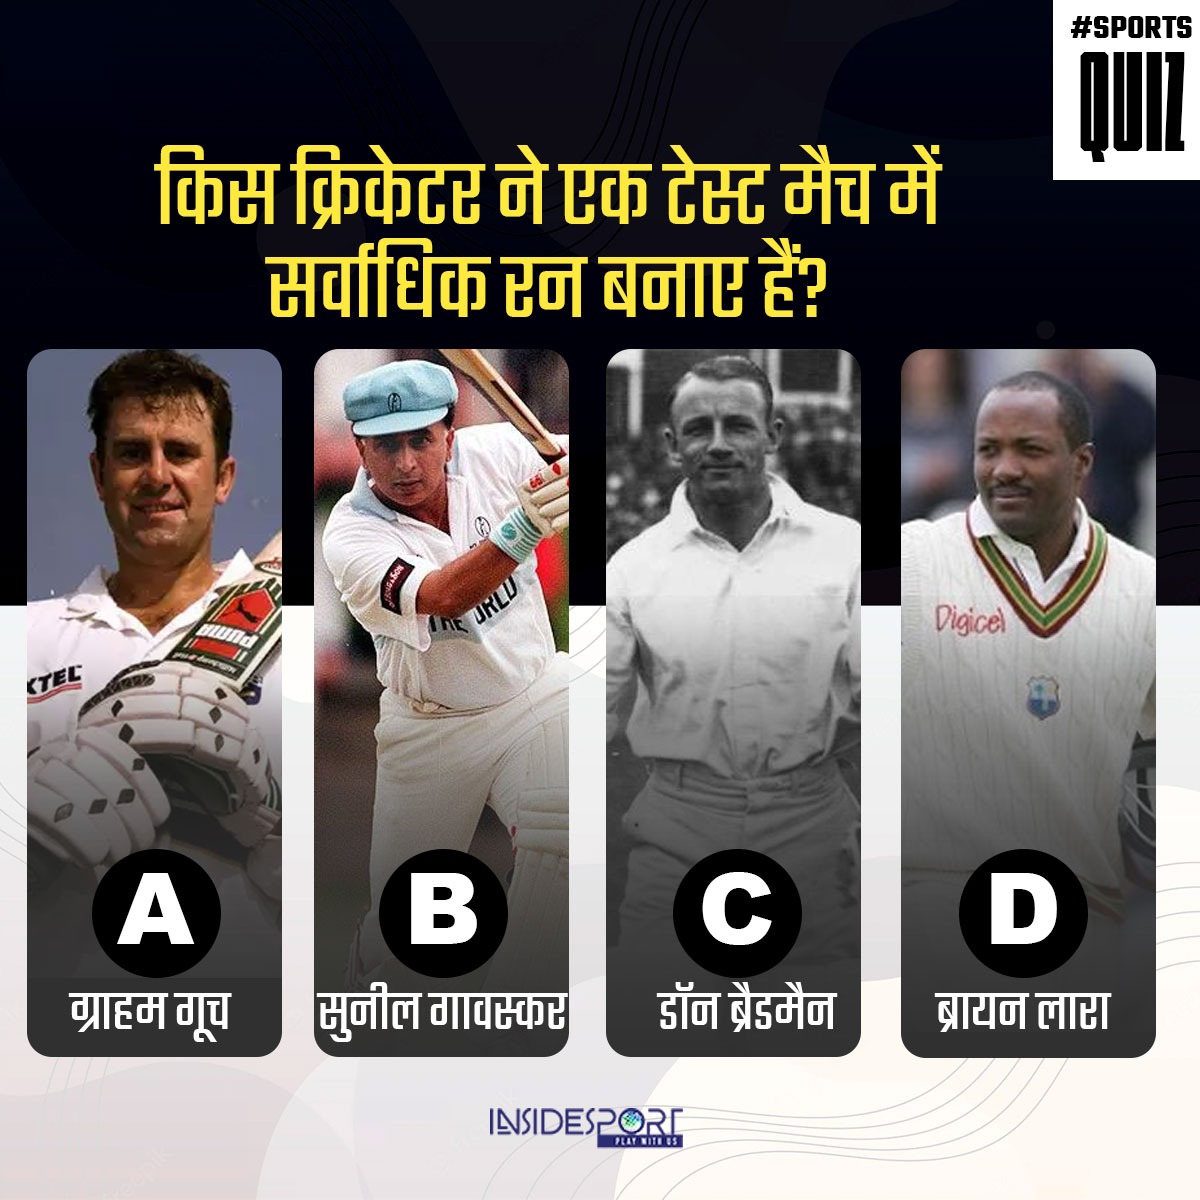 इस खिलाड़ी ने एक टेस्ट मैच में 456 रन बनाए थे, बताइए कौन है ये खिलाड़ी?

#CricketQuiz #InsideSport